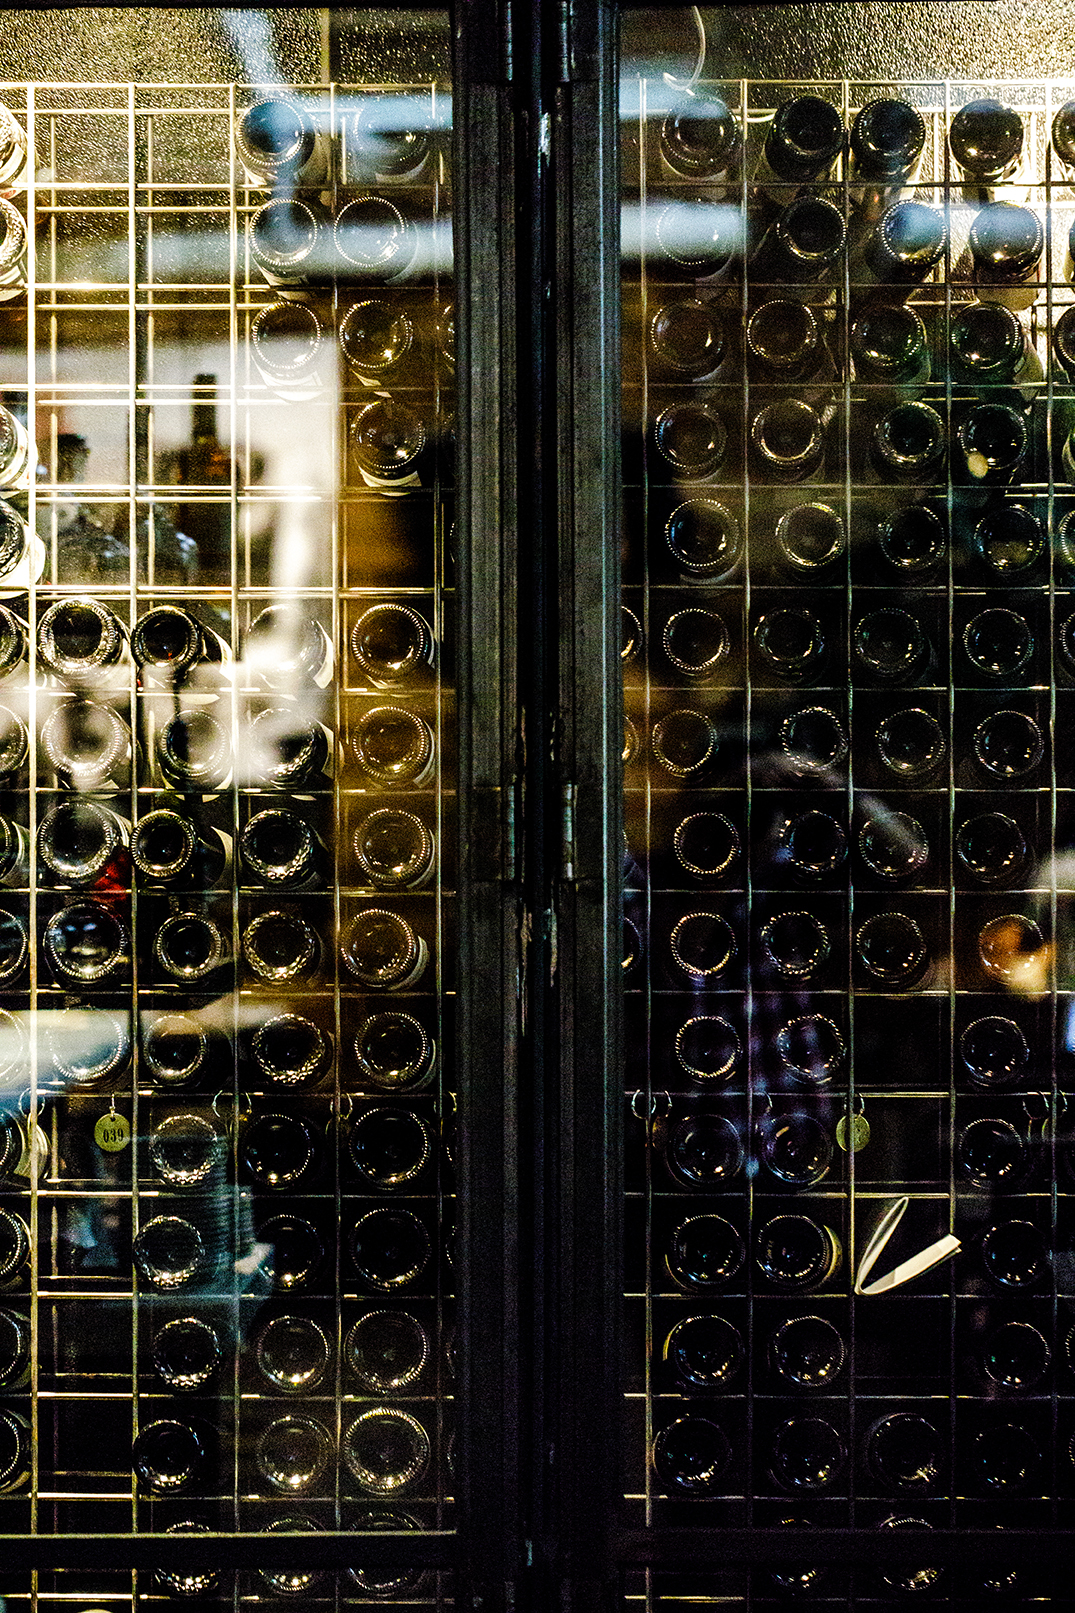 Barcelona Wine Bar Photo